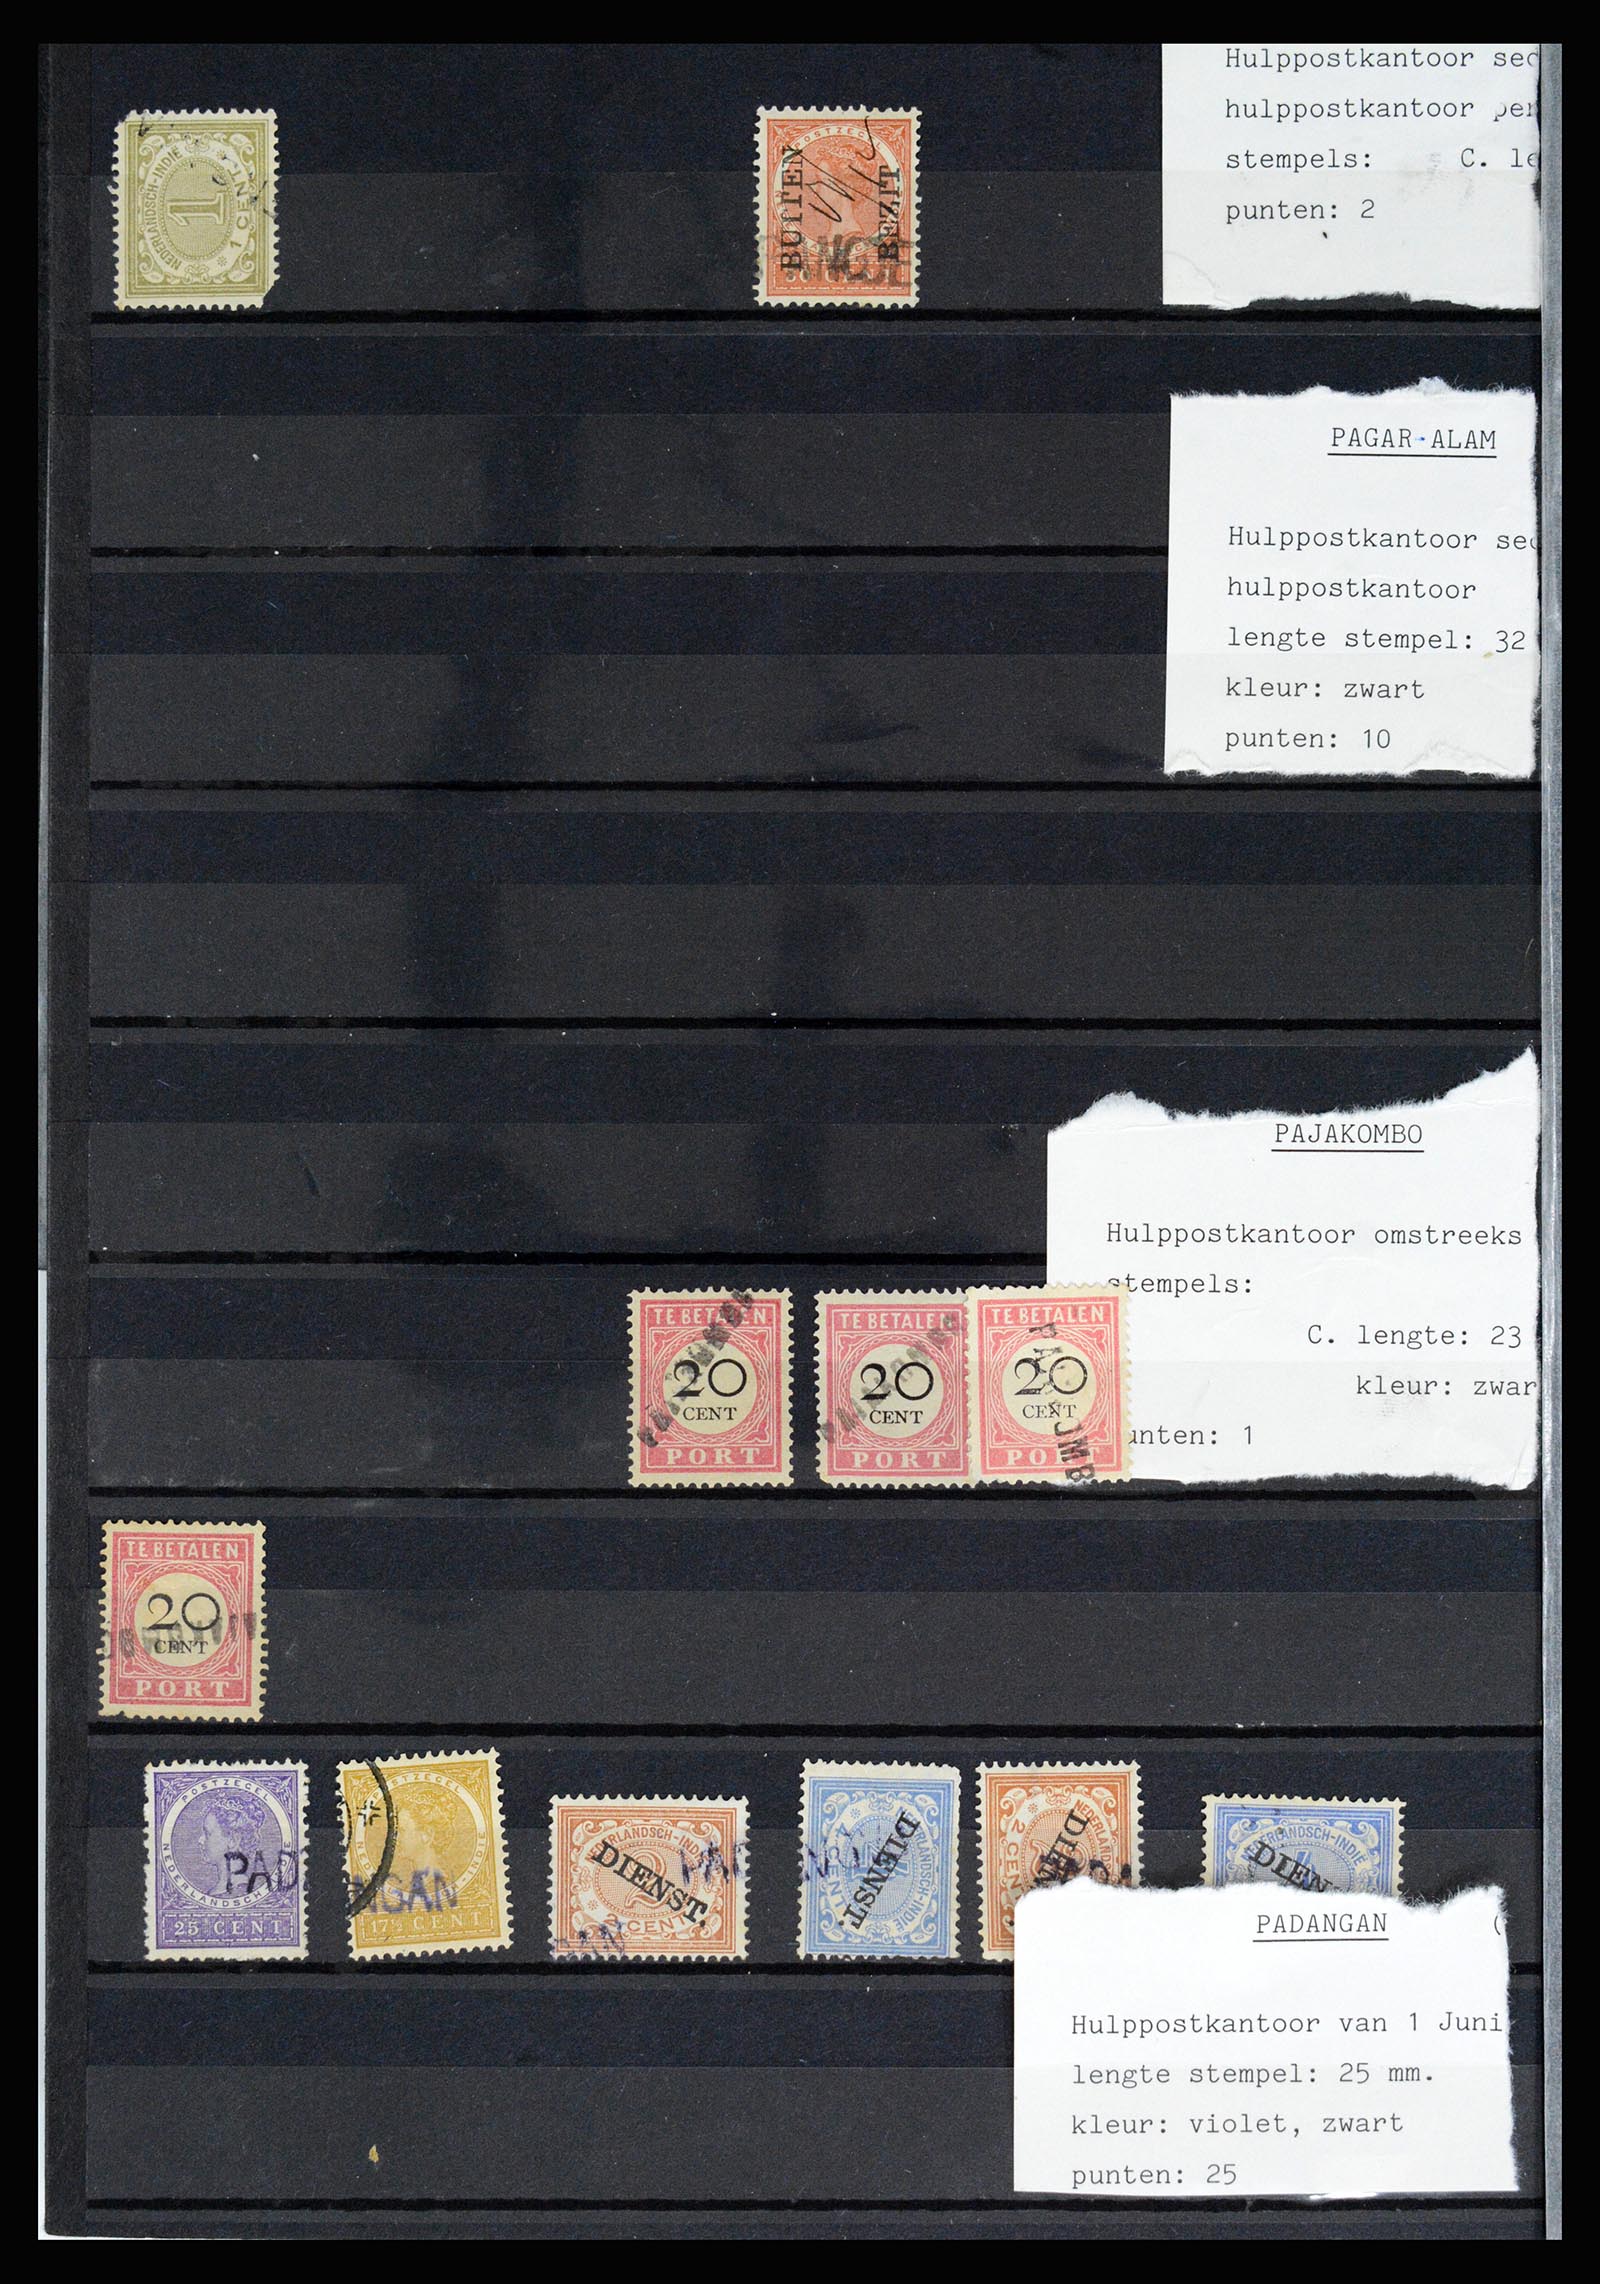 36512 048 - Stamp collection 36512 Nederlands Indië stempels 1872-1930.